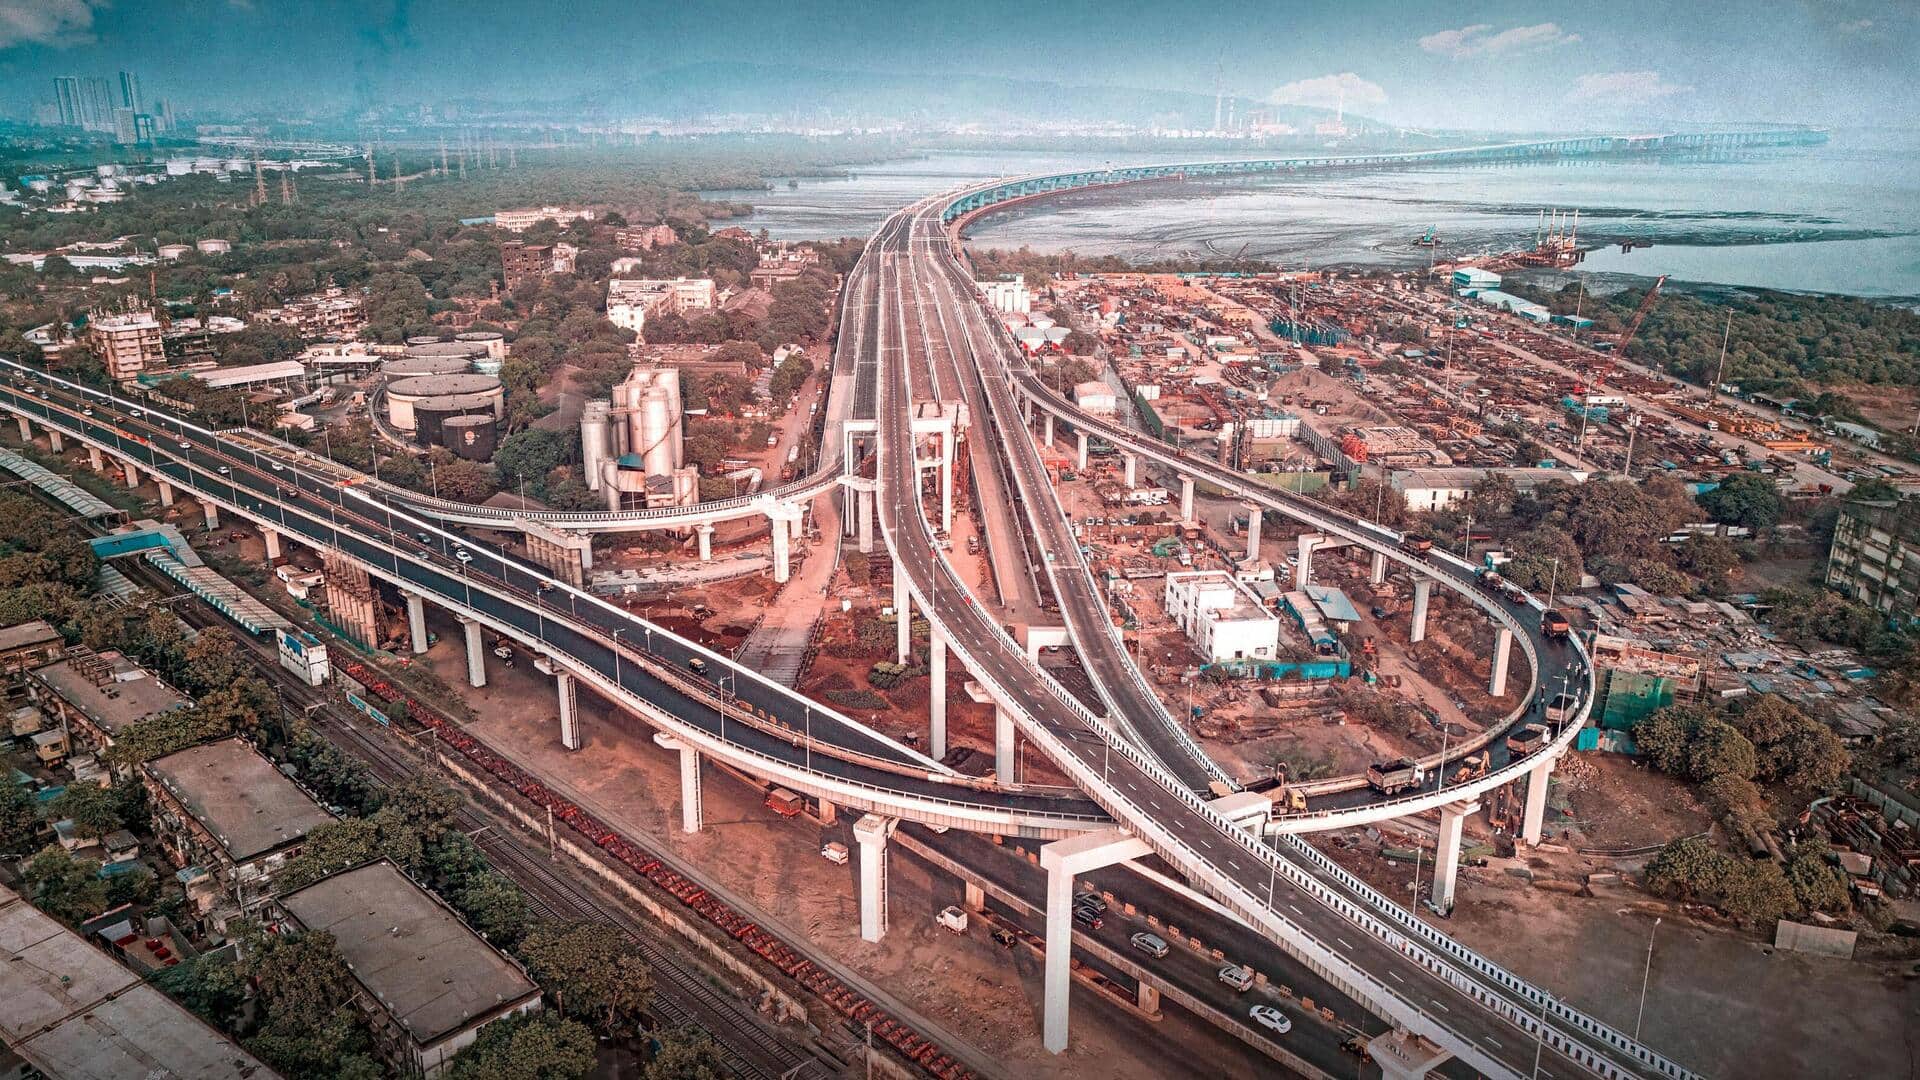 PM Modi inaugurates India's longest sea bridge in Mumbai